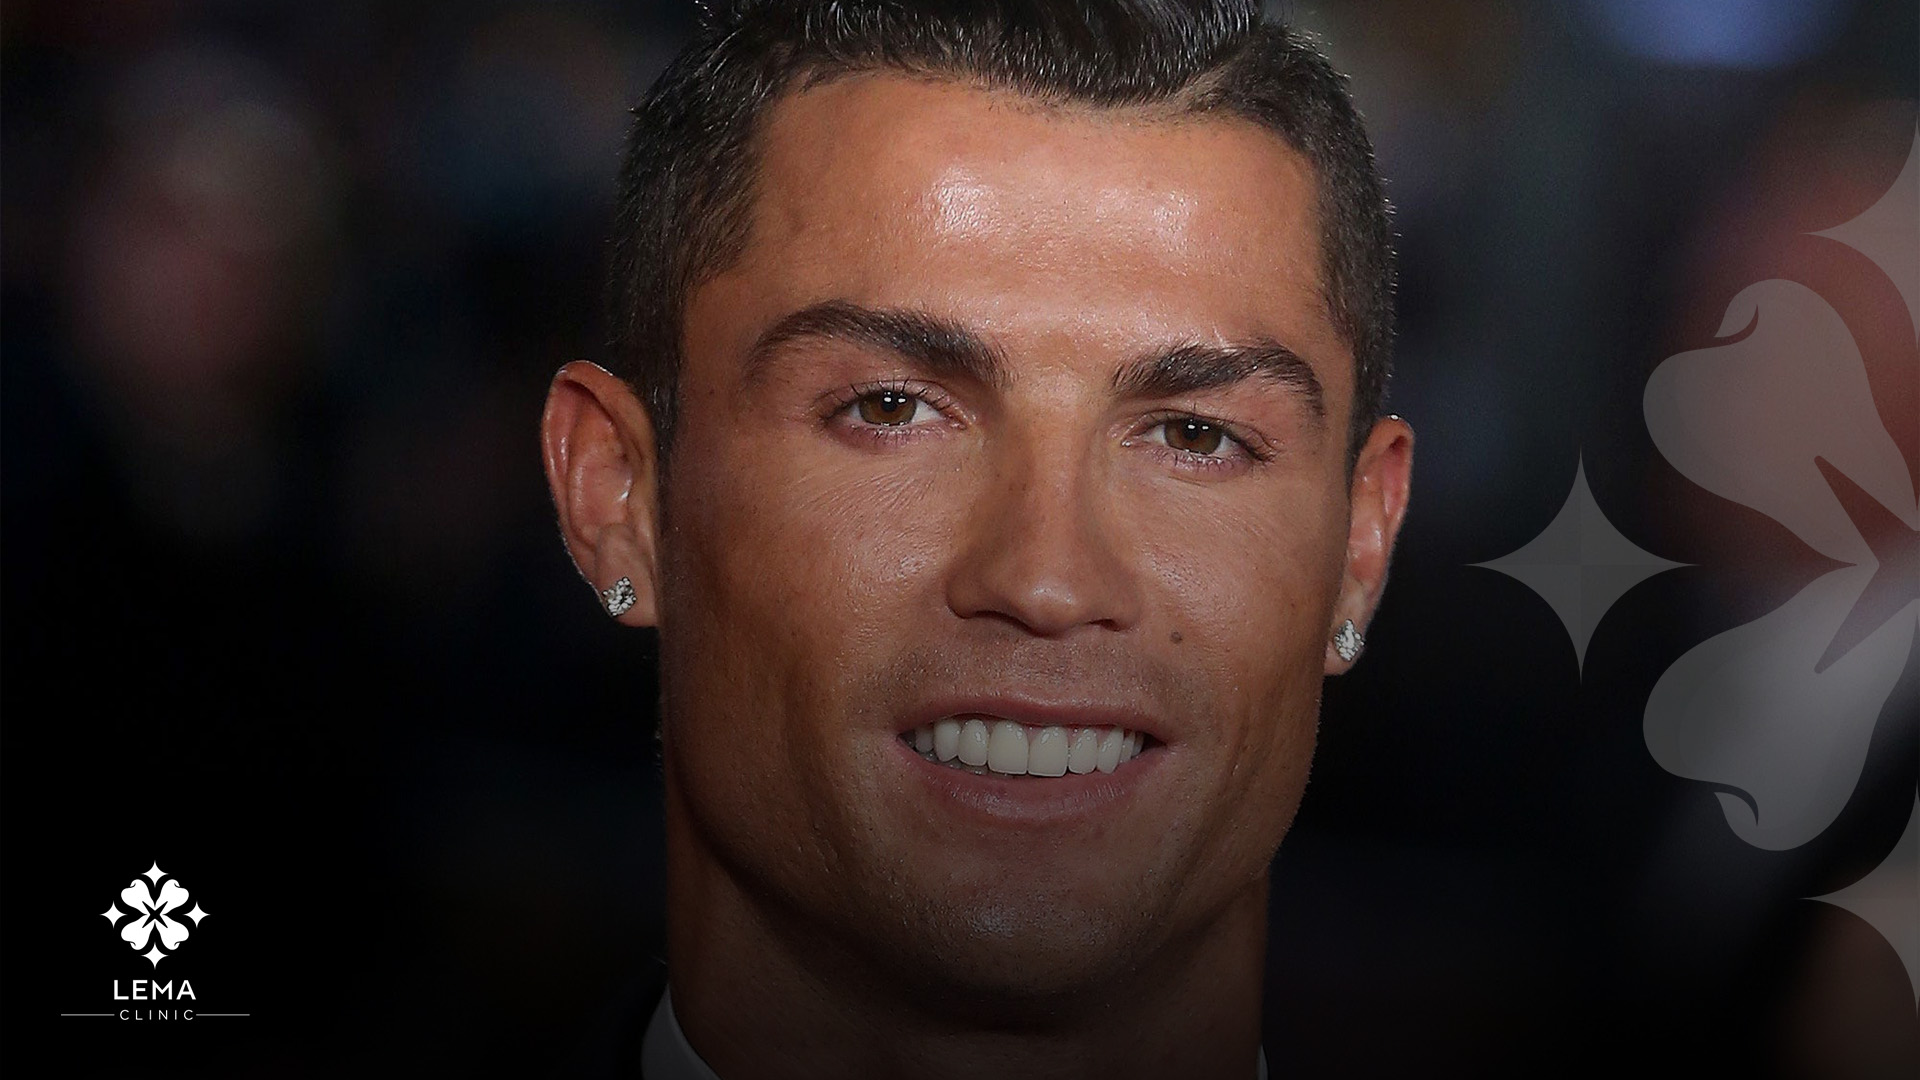 Cristiano Ronaldo's smile makeover